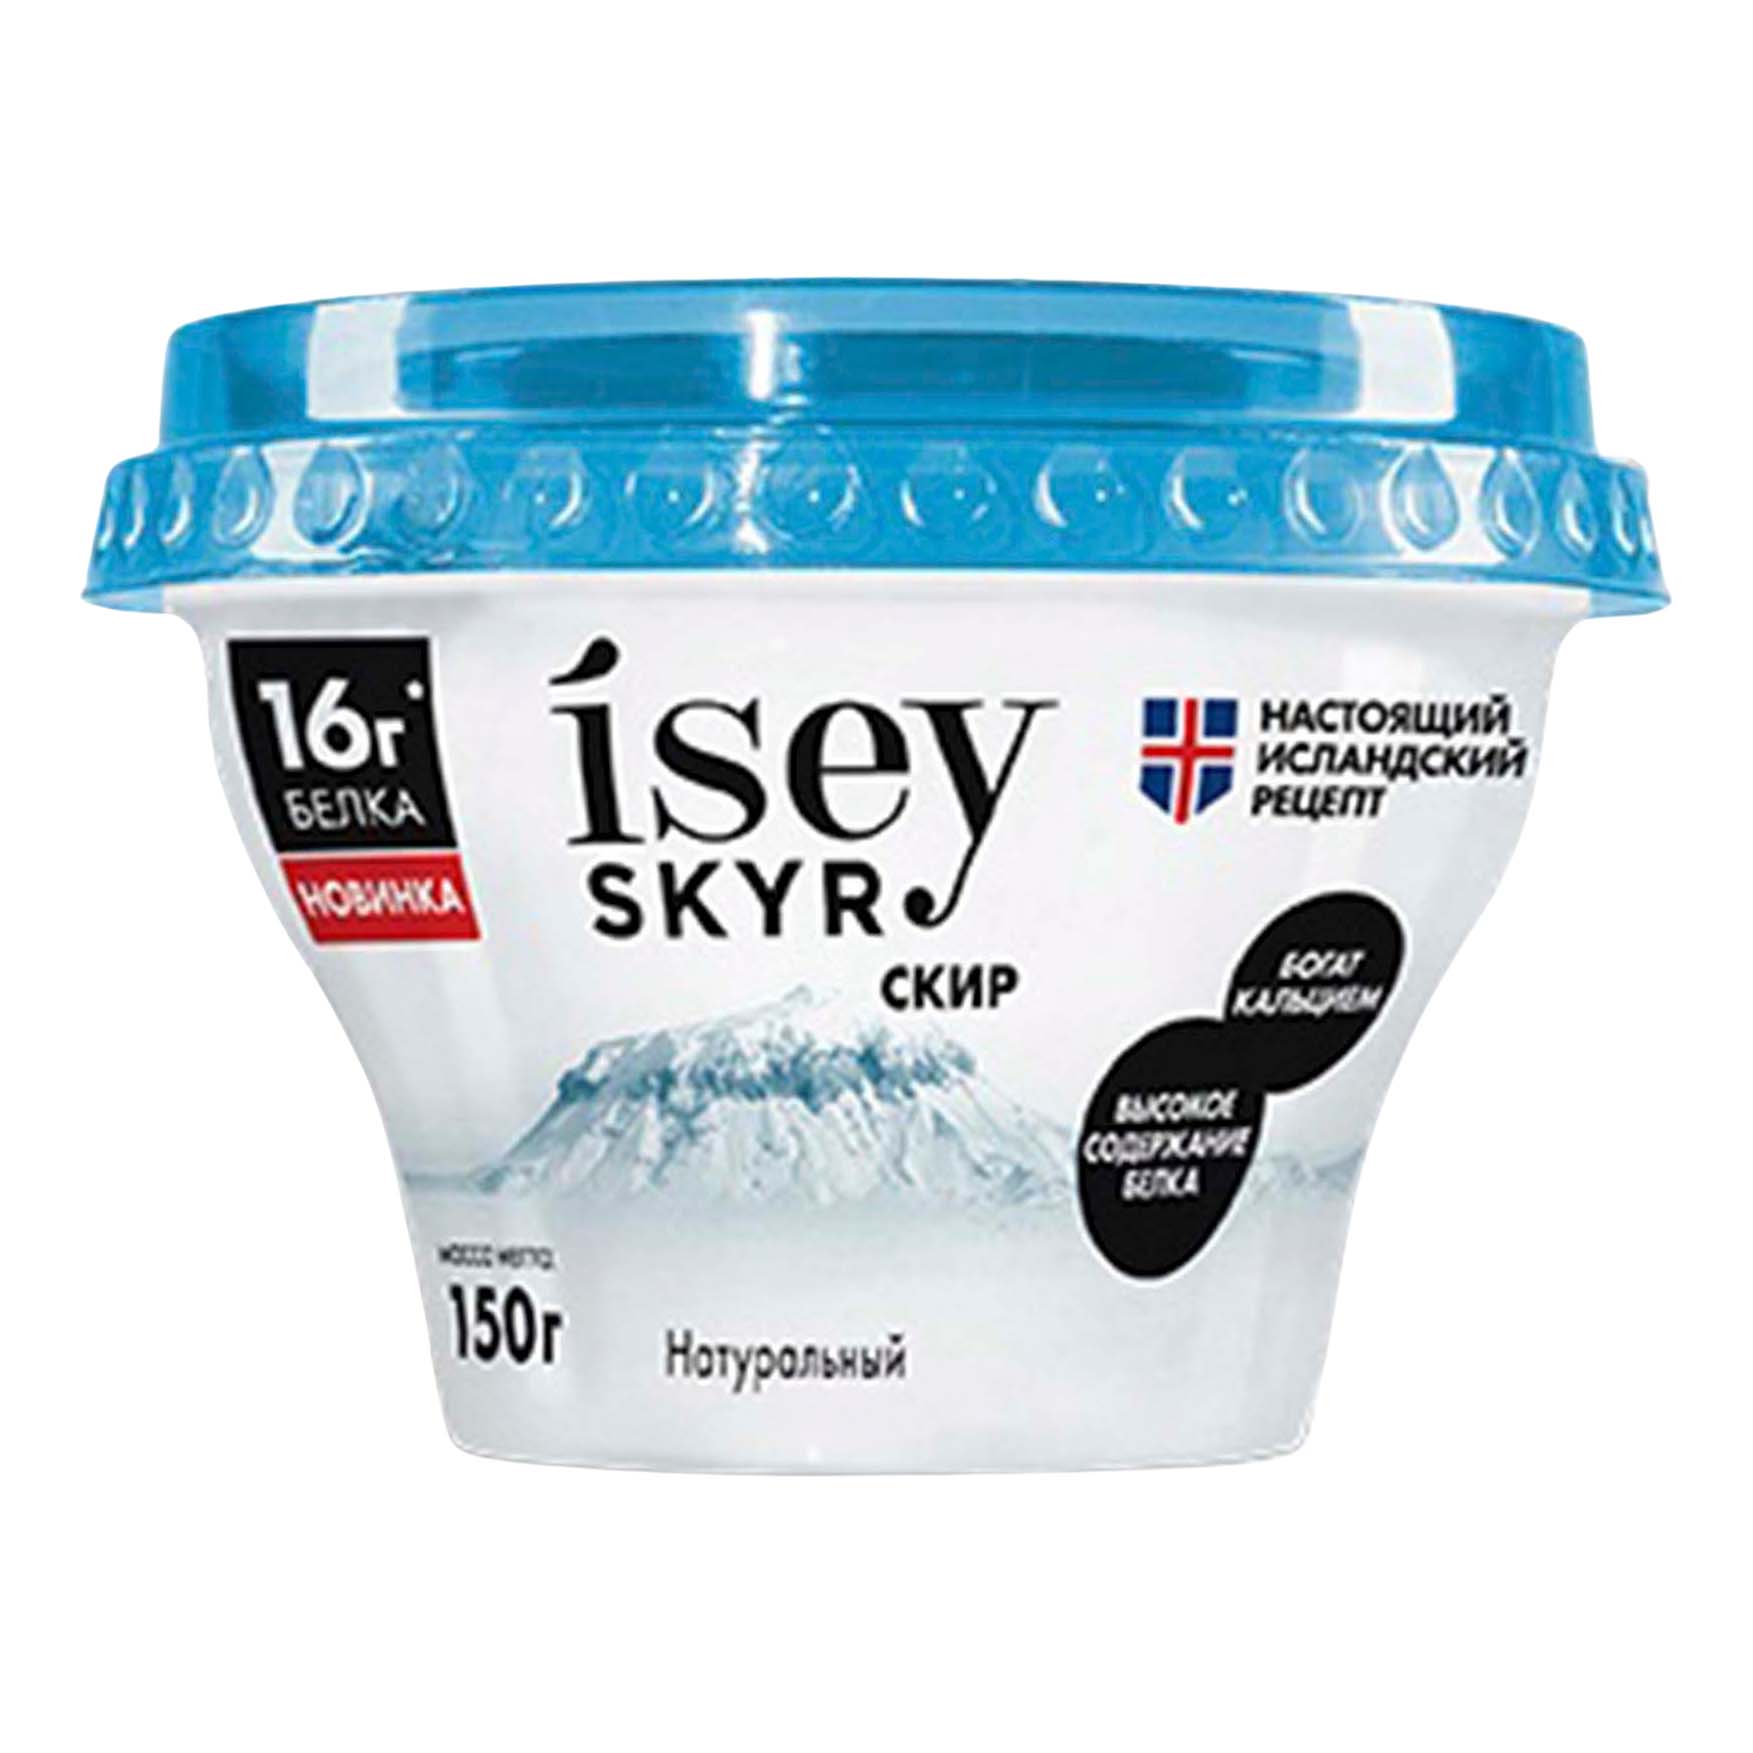 Exponenta bio skyr купить. Isey Skyr. Исландский скир натуральный 1.5%. Исландский скир isey Skyr. Исландский йогурт скир.